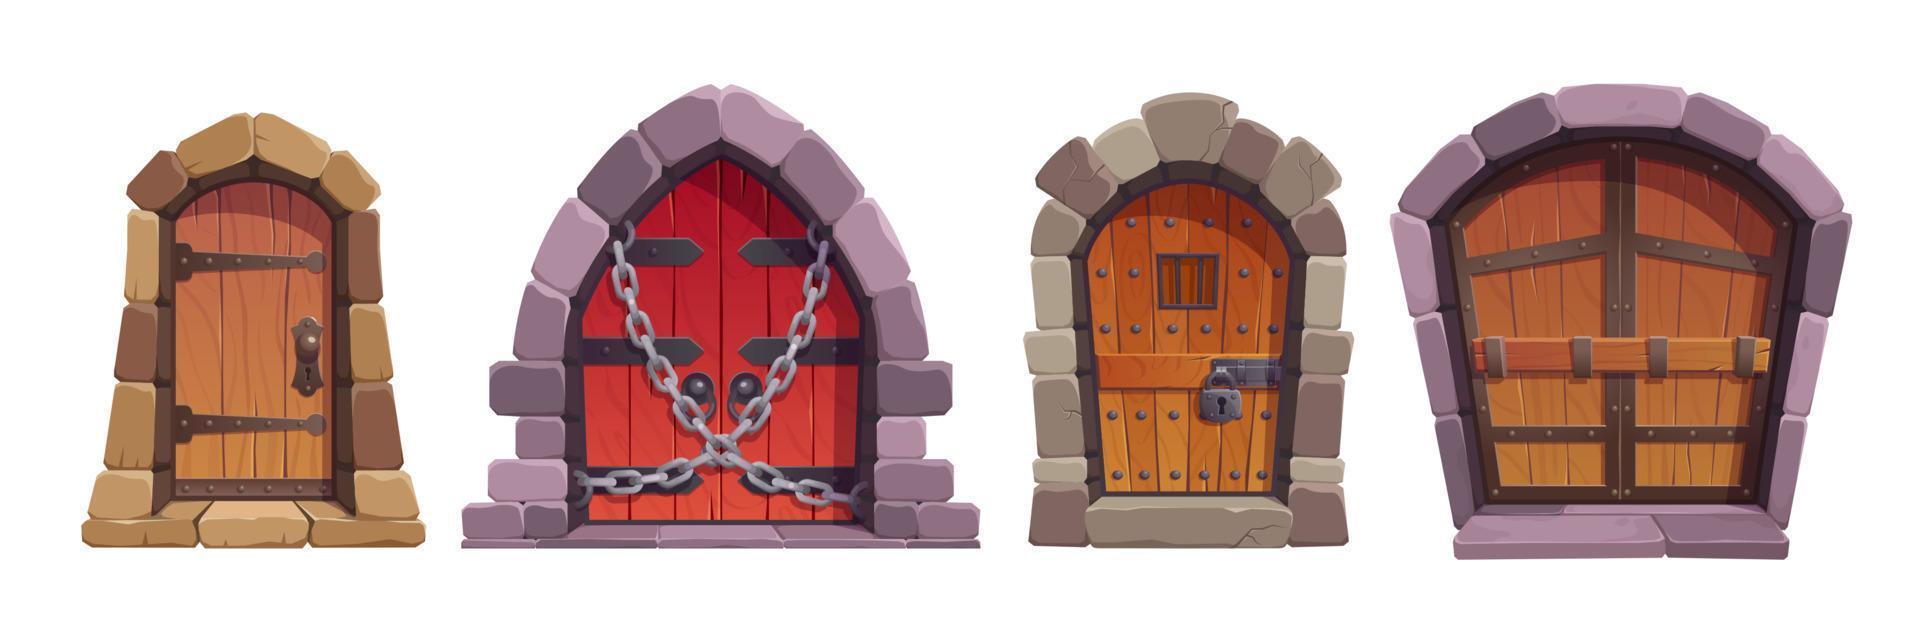 desenho animado conjunto do medieval castelo ou masmorra portas vetor